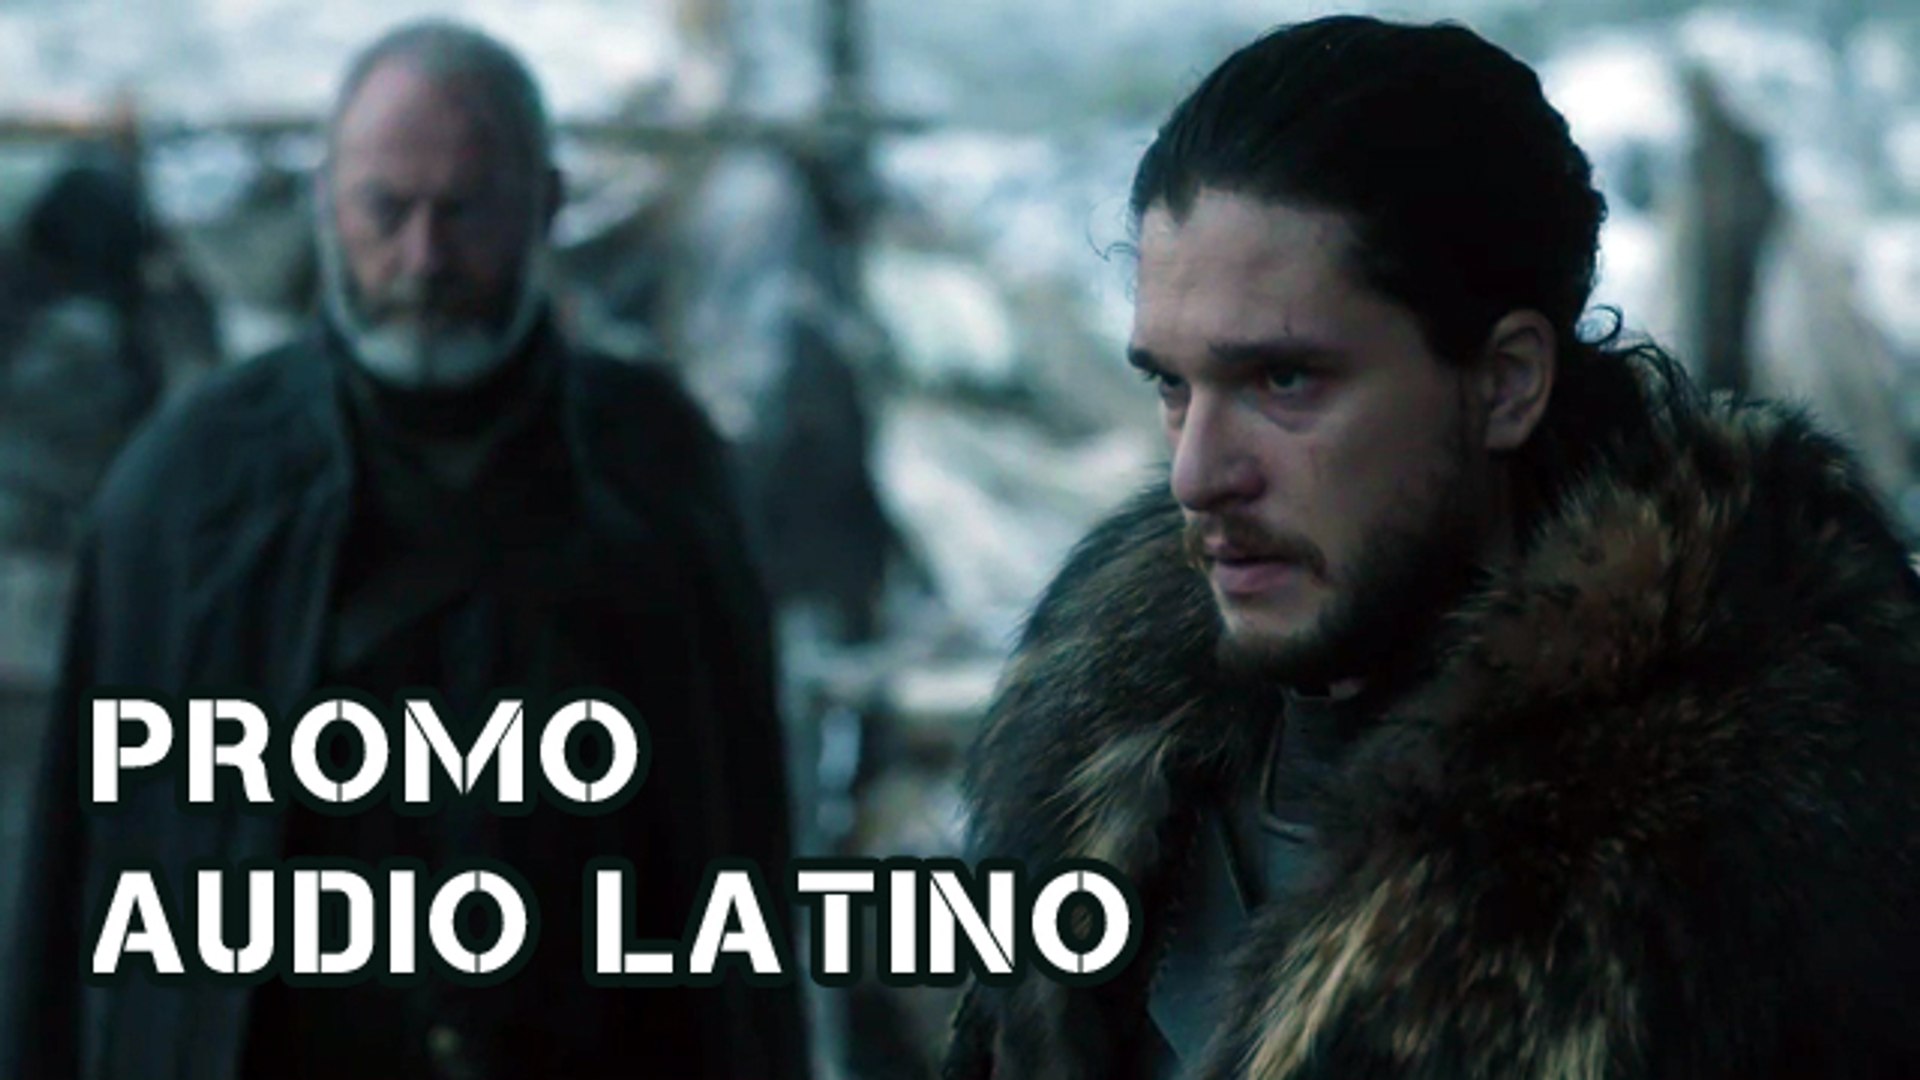 Documento experiencia Pasteles Game of Thrones 6x07 Promo Audio Español Latino - Vídeo Dailymotion